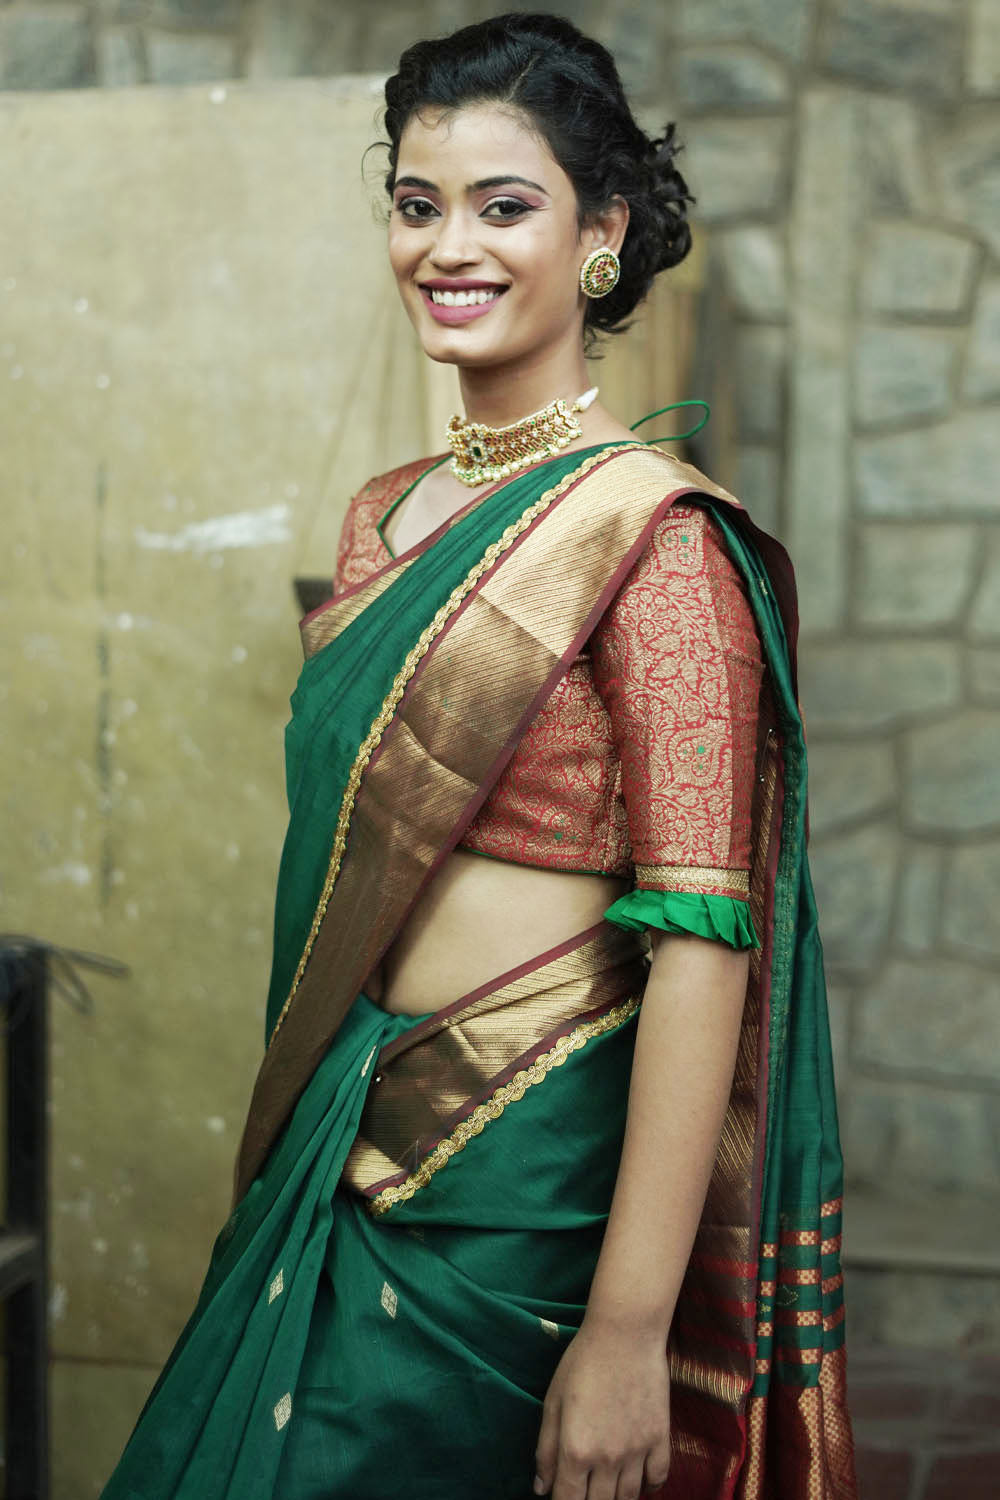 Pine green maheshwari silk saree with lace and gold border